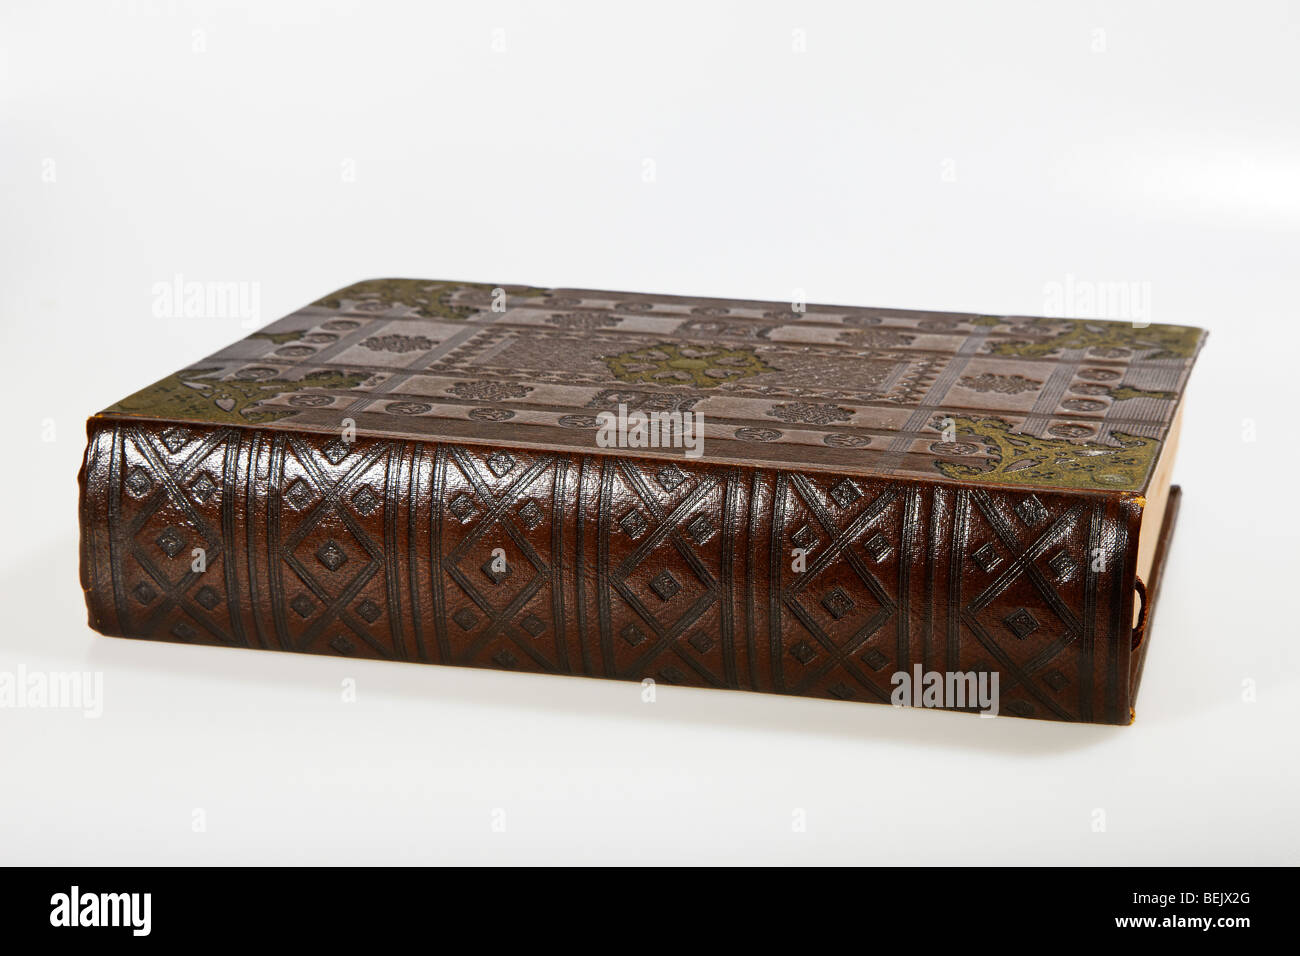 Antigua Biblia encuadernada de cuero, de moda en la Biblia de Gutenberg original Foto de stock